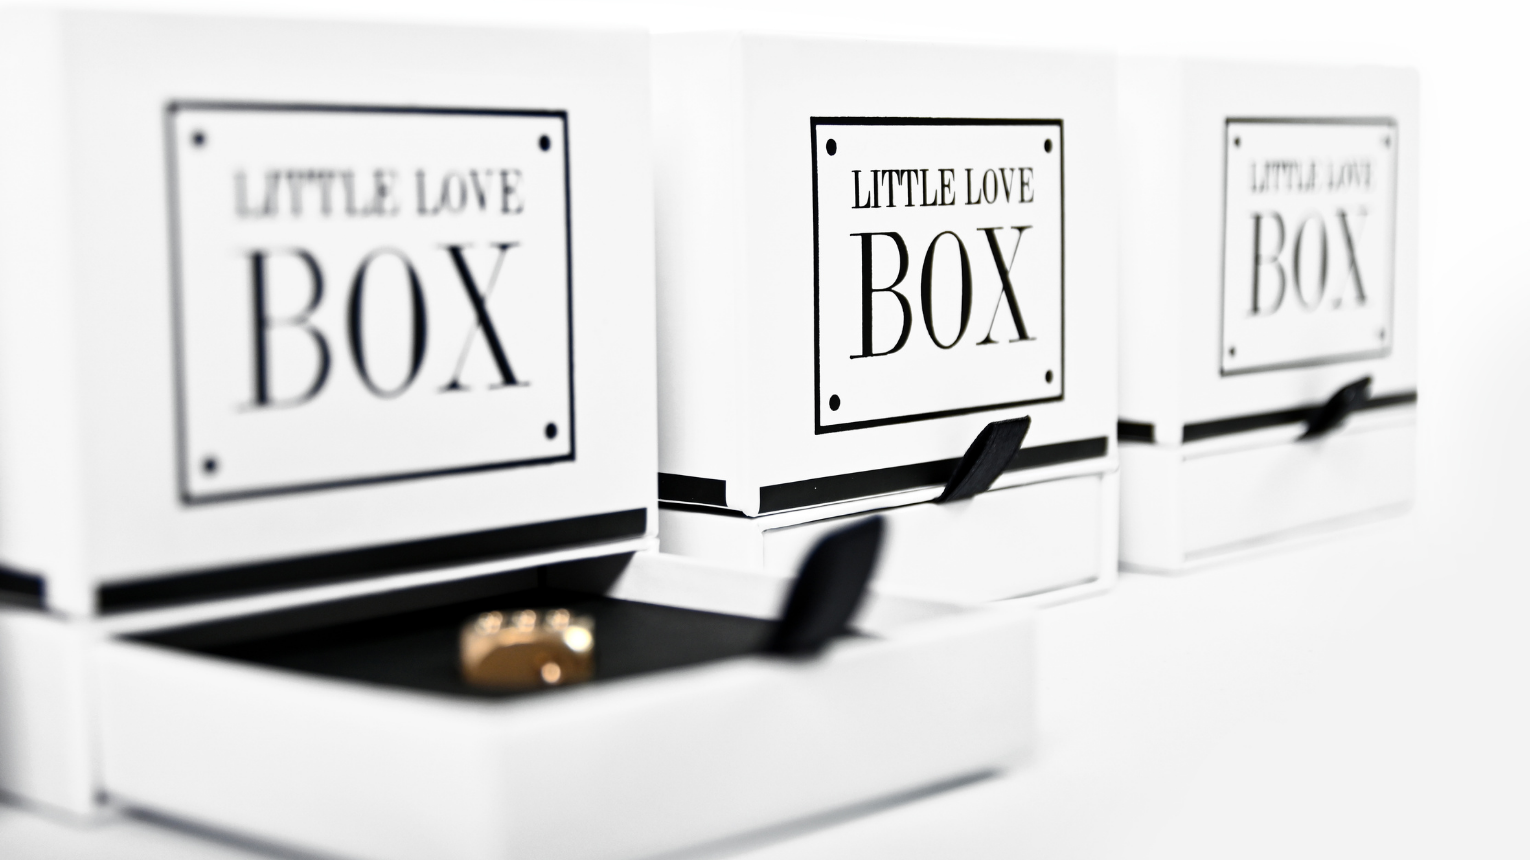 LITTLE LOVE BOX párkapcsolati játék! Közös idő ajándékba 6